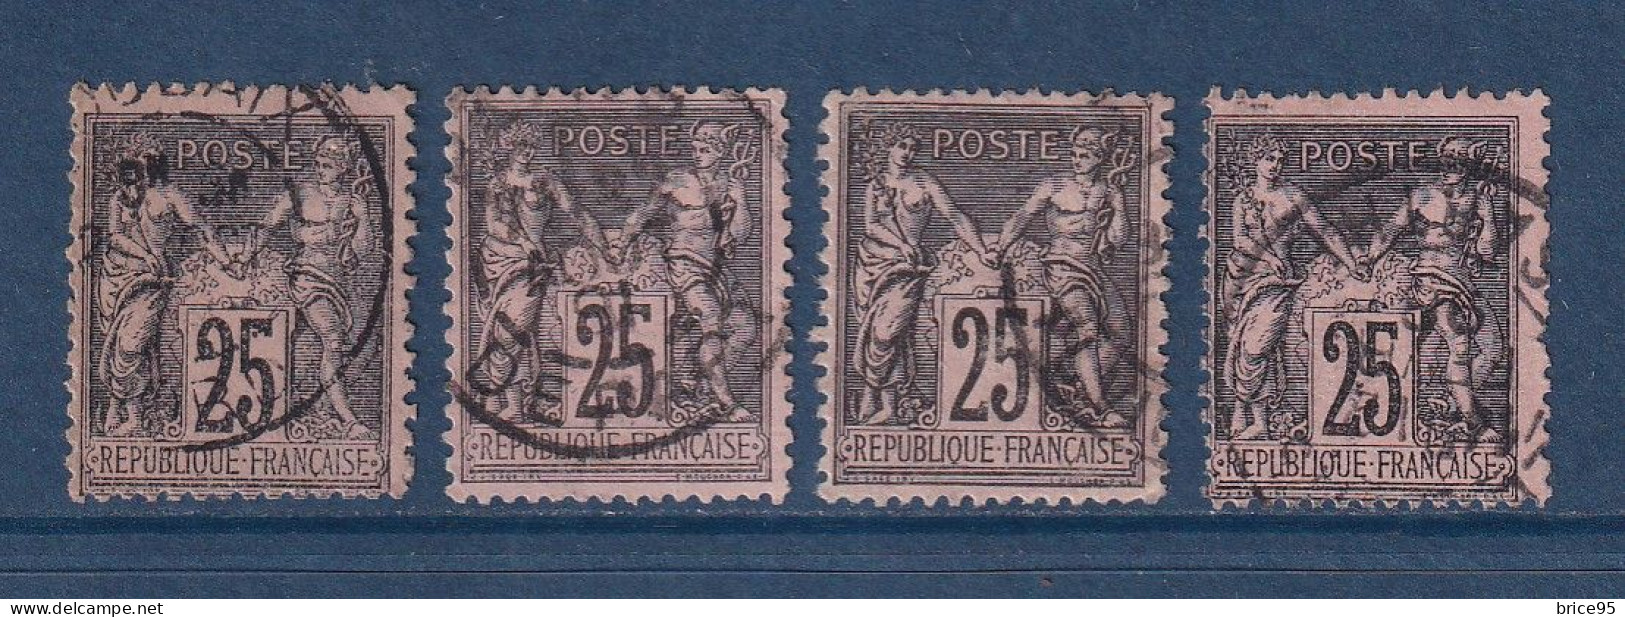 France - YT N° 91 - Oblitéré - 1878 - 1876-1898 Sage (Tipo II)